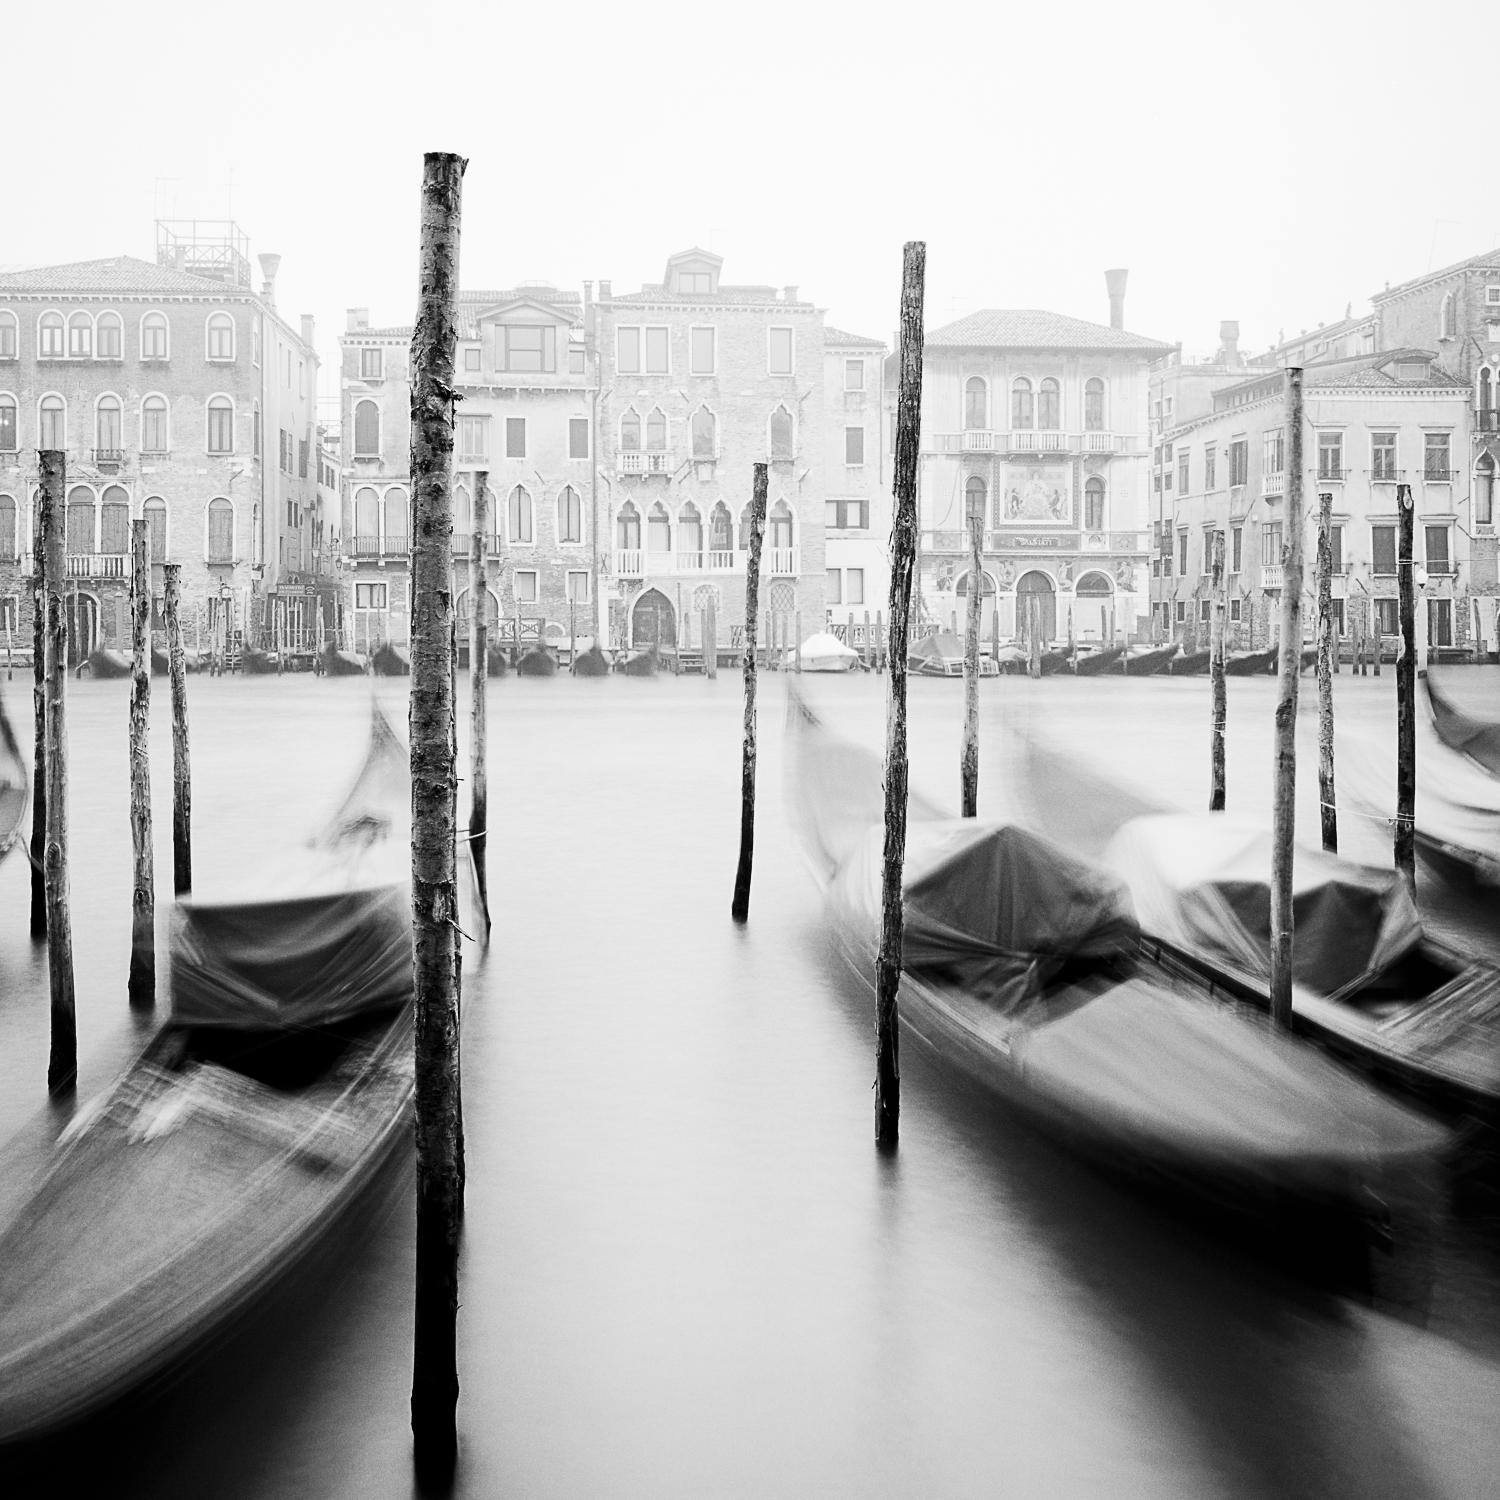 Gondola, Venedig, Schwarz-Weiß-Gelatine-Silber-Kunstfoto, gerahmt (Zeitgenössisch), Photograph, von Gerald Berghammer